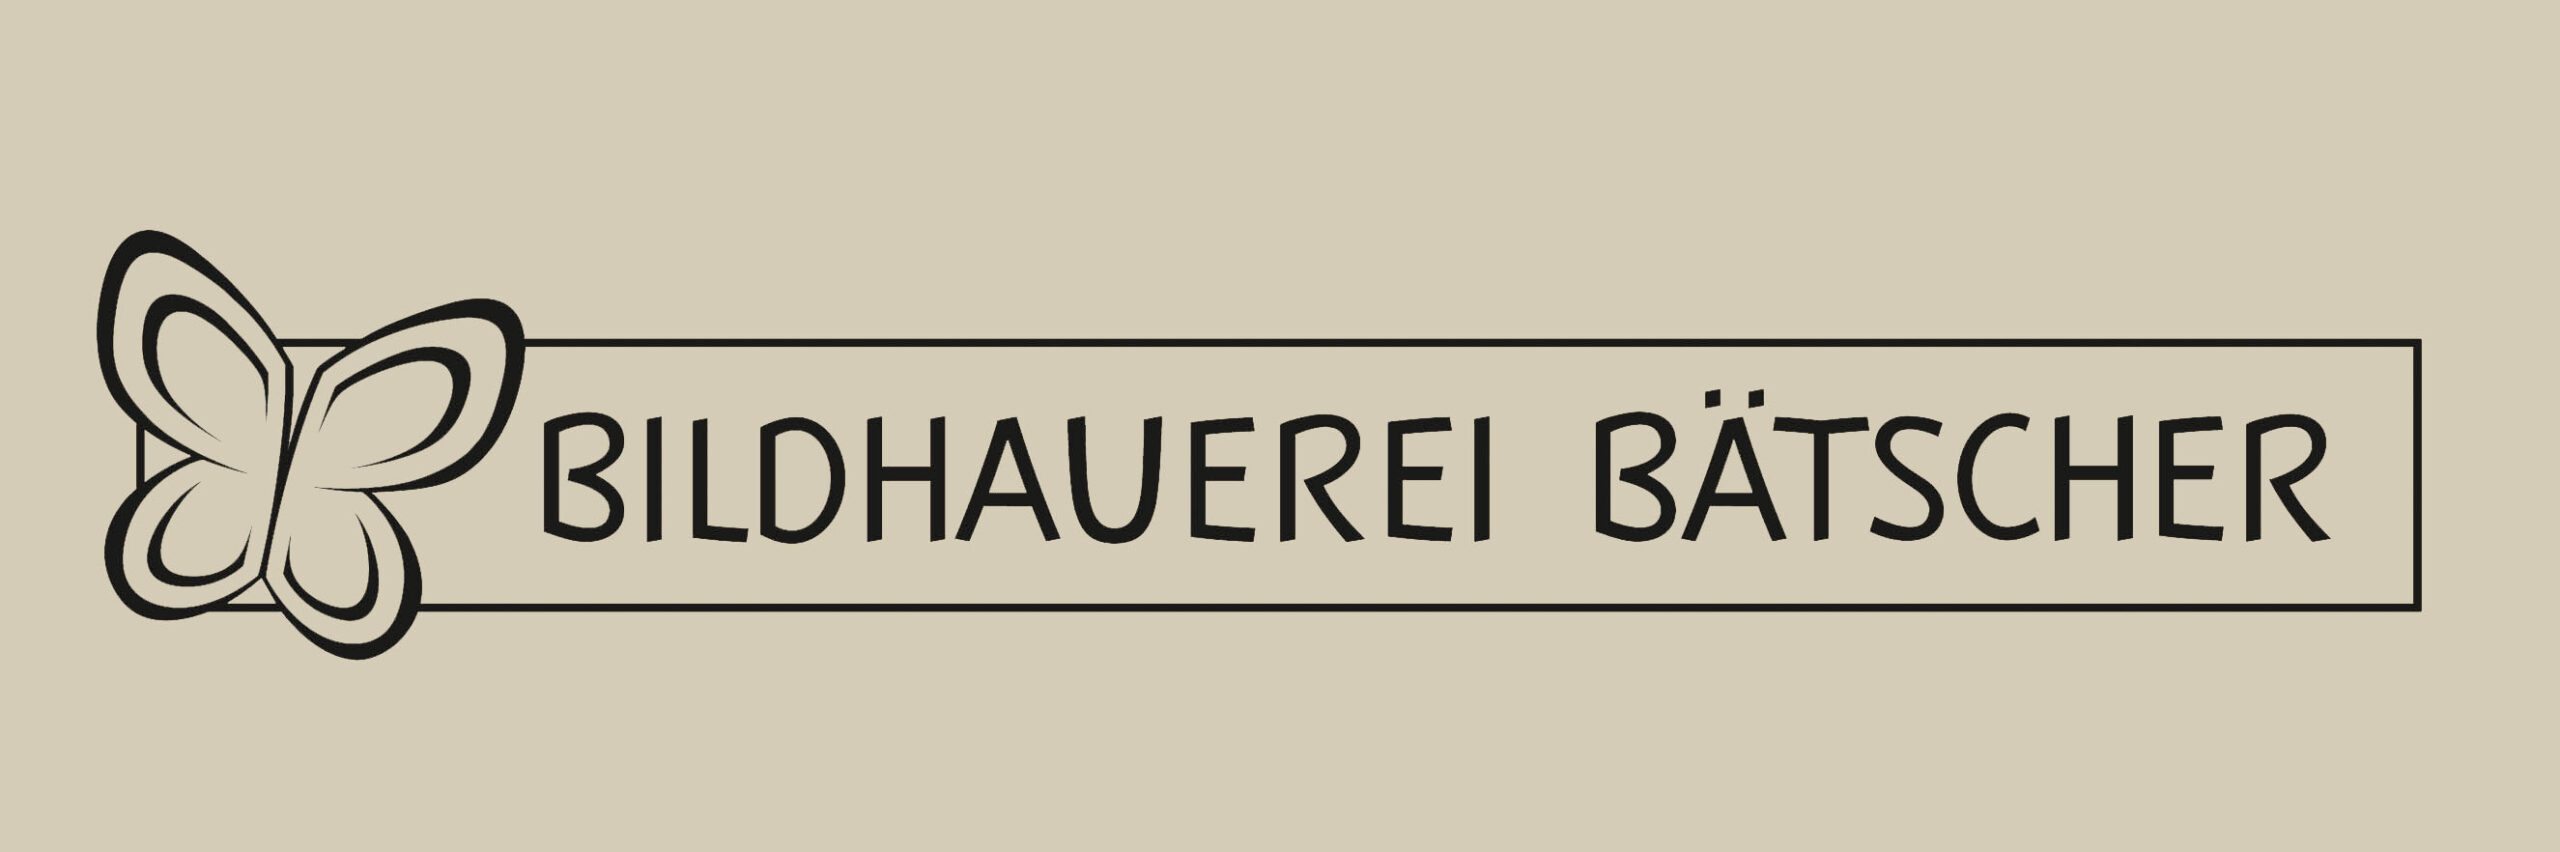 Bildhauerei Bätscher Logo